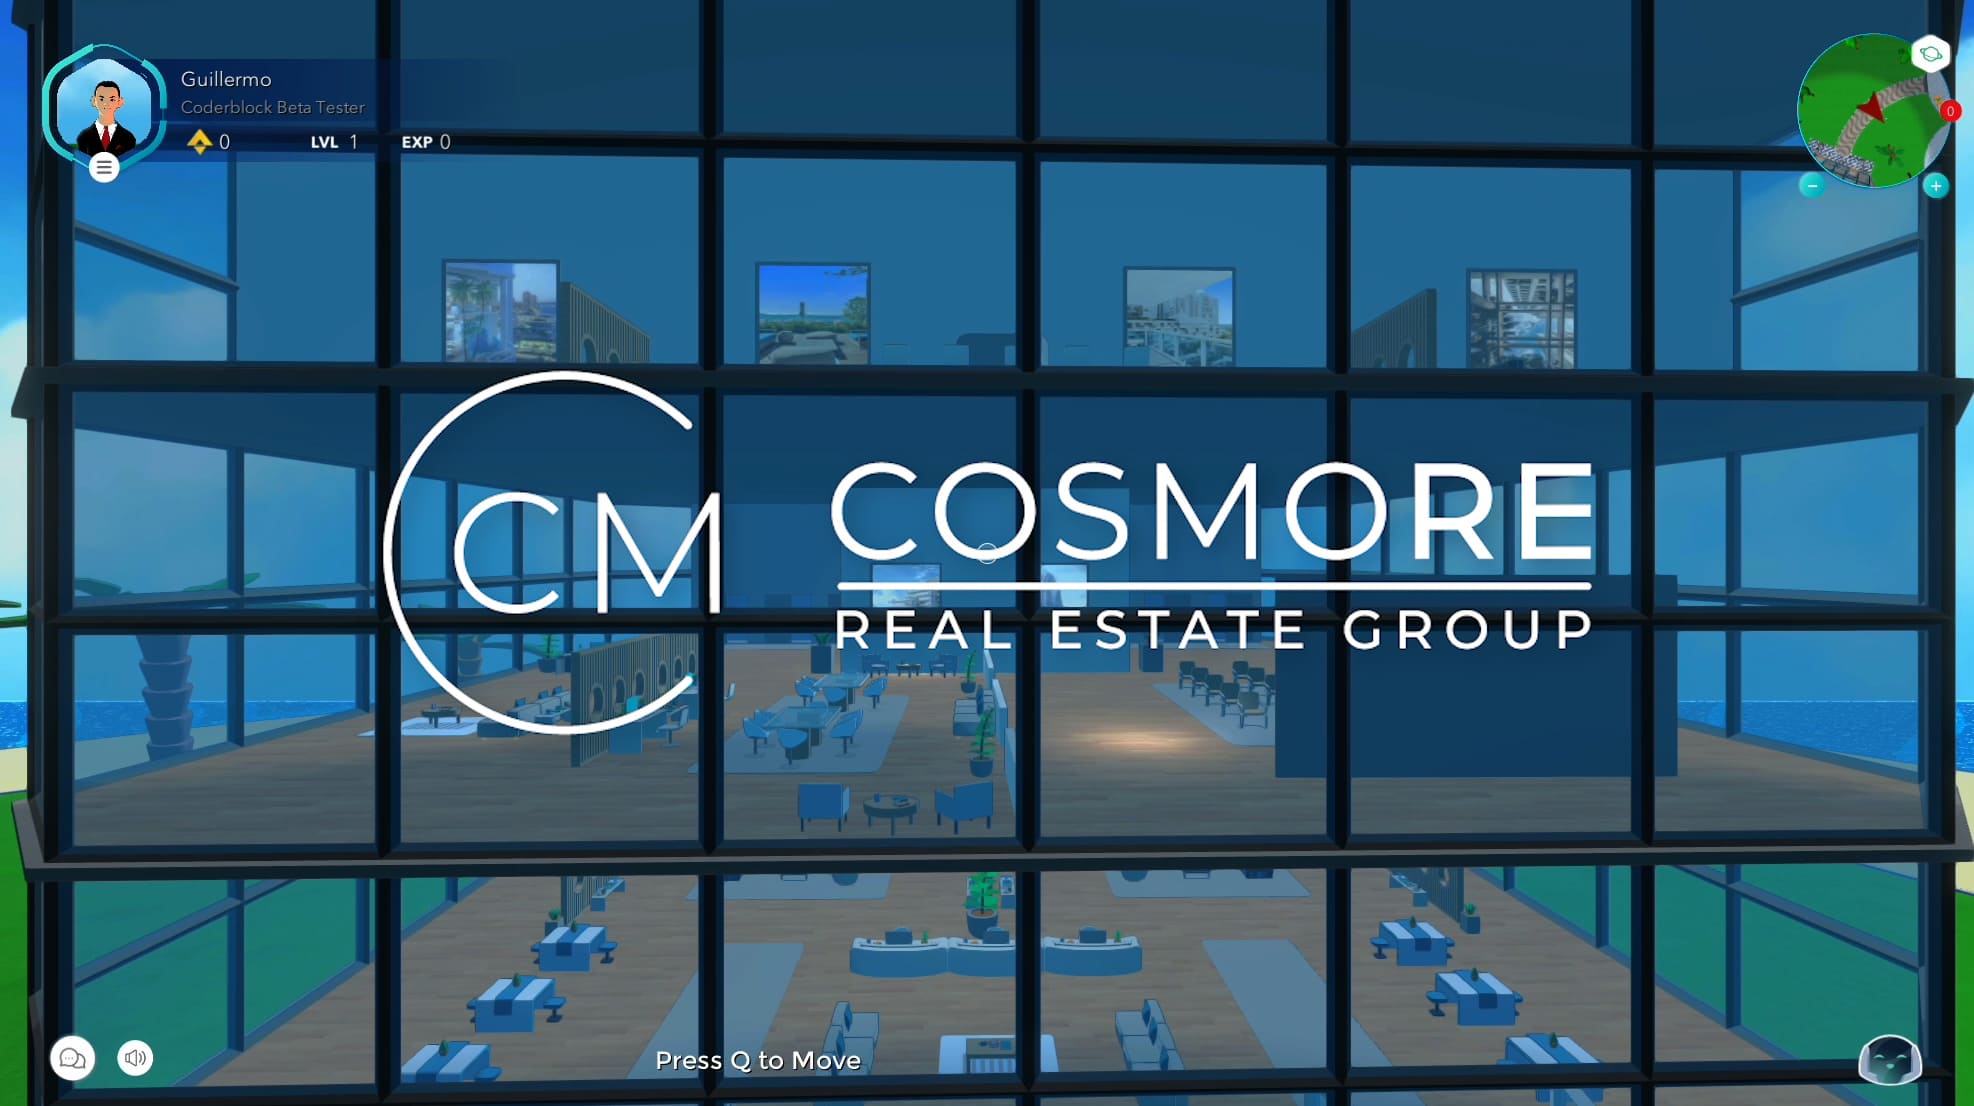 Technoretail - Cosmore Real Estate Group sbarca nel metaverso di Coderblock 